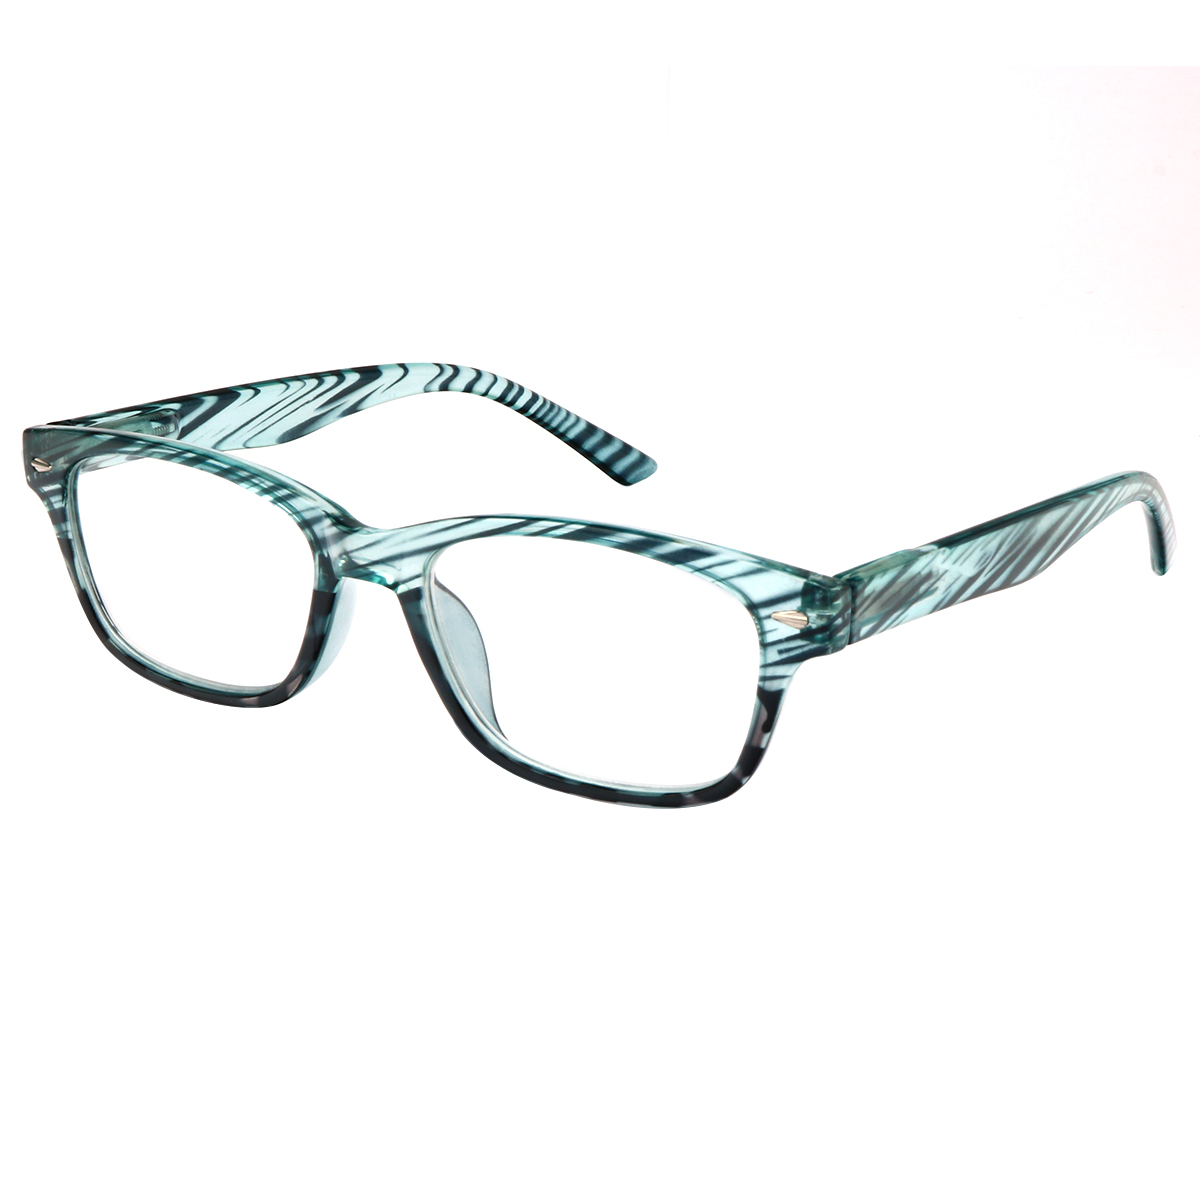 Cassian - Rectangle Green Reading Glasses for Men & Women